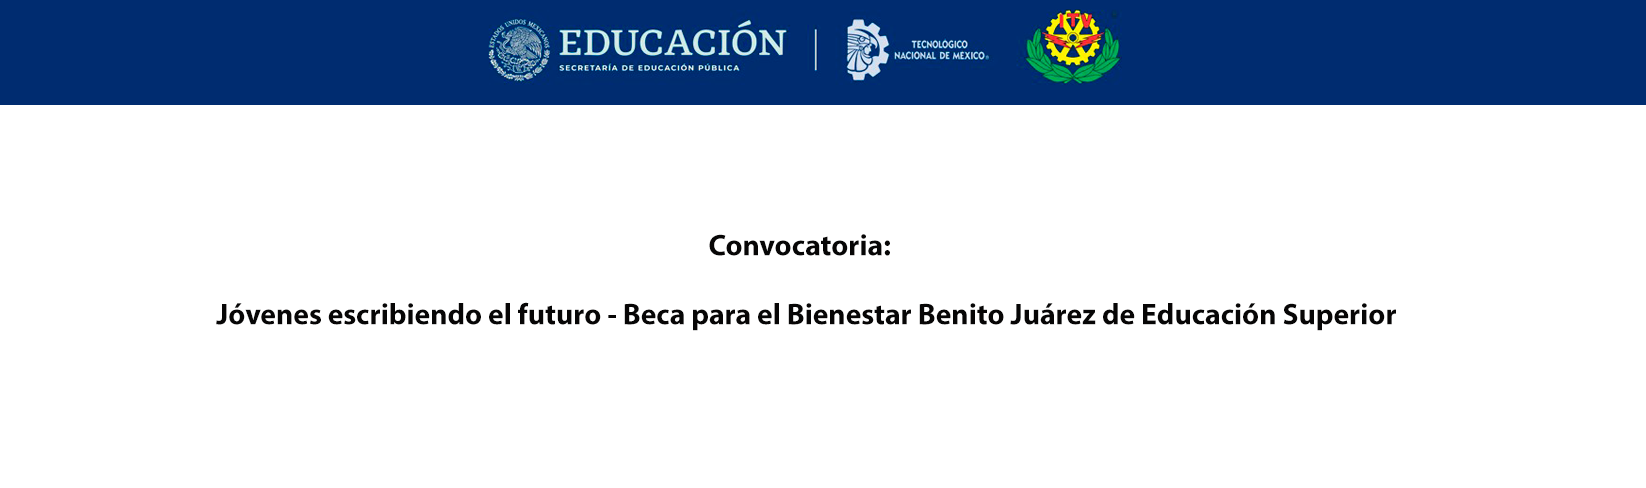 Jóvenes escribiendo el futuro - Beca para el Bienestar Benito Juárez de Educación Superior